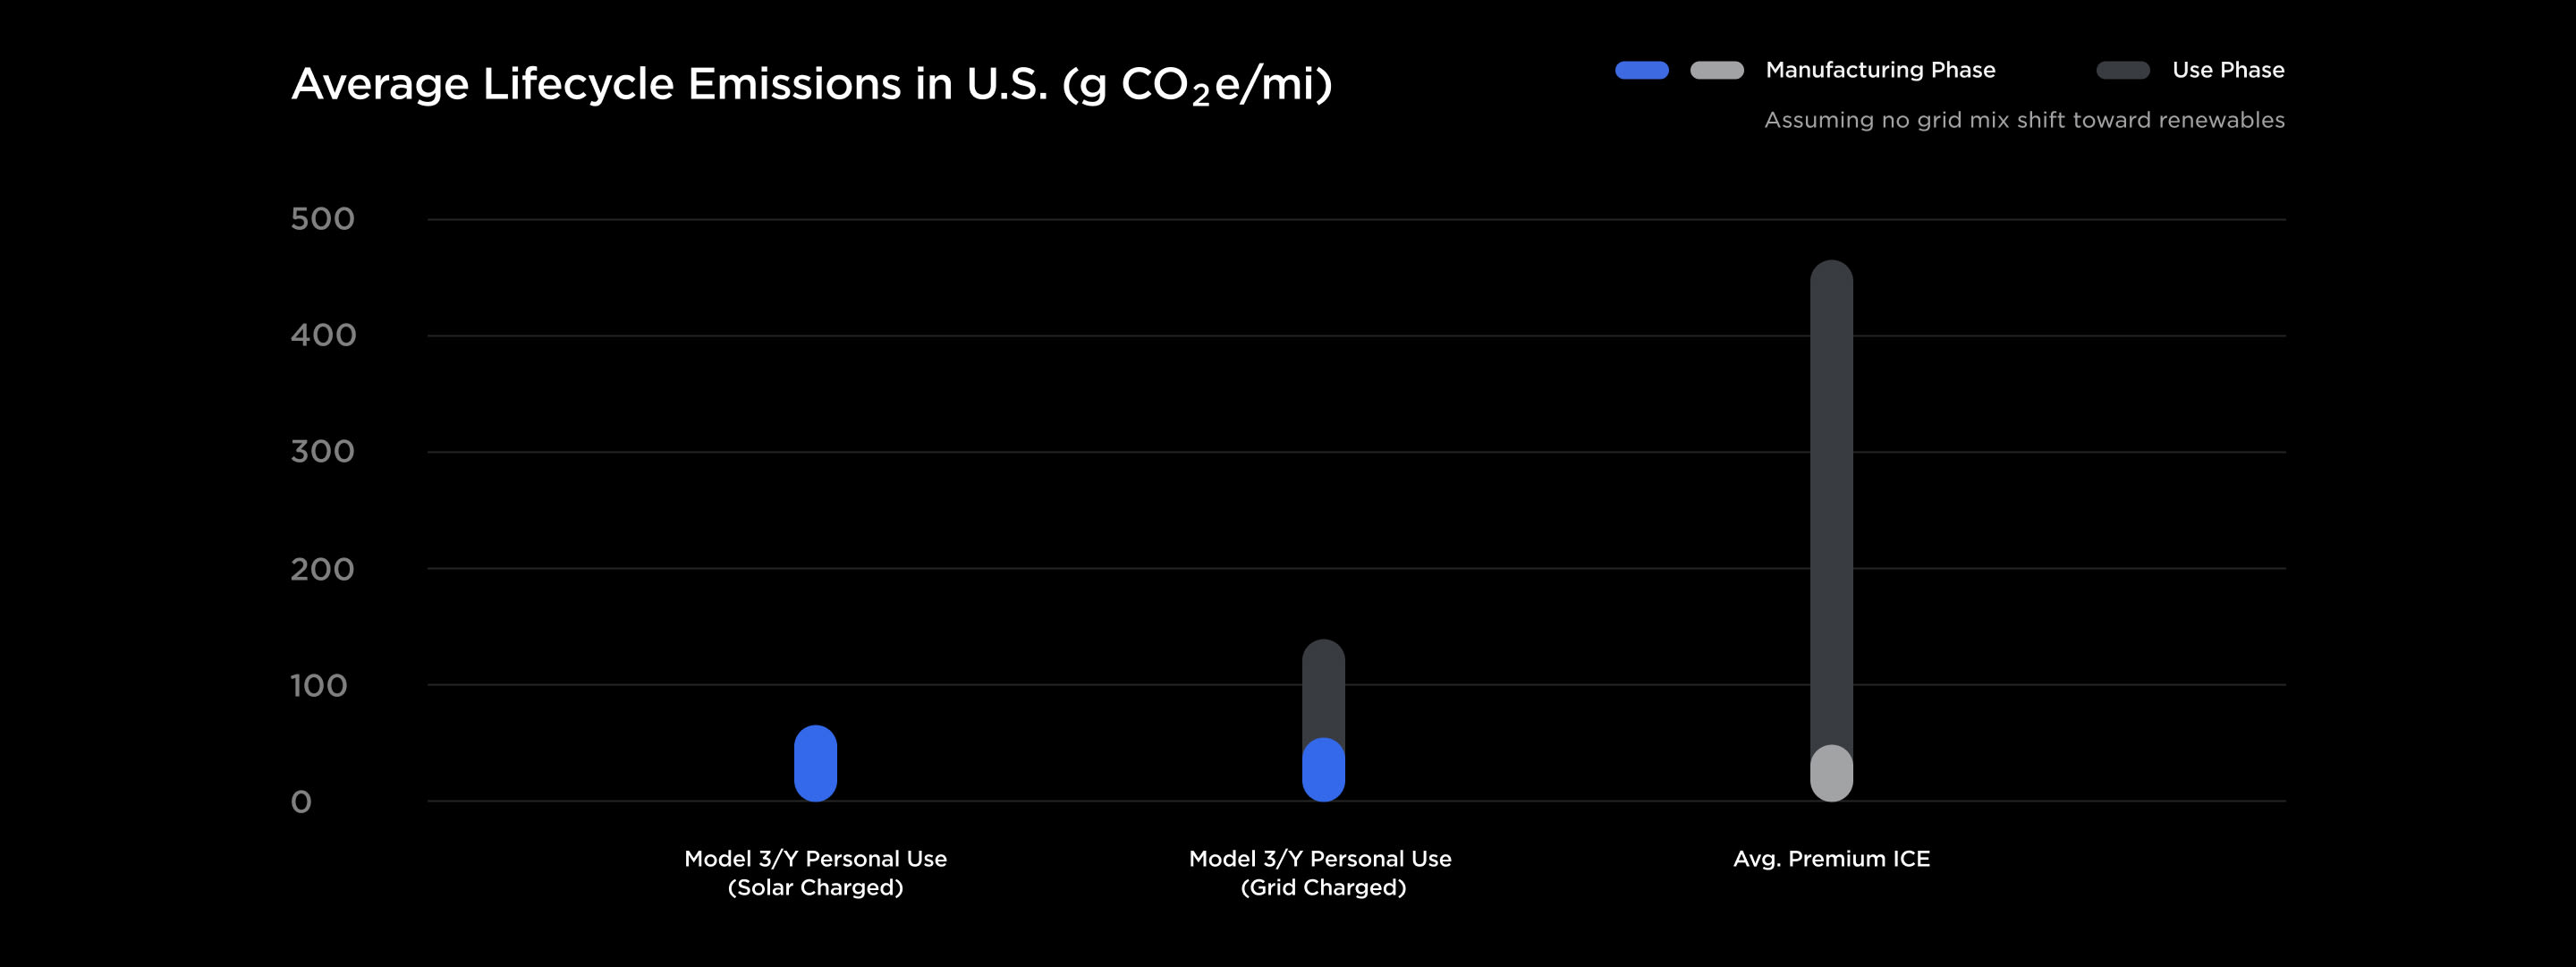 Emissões médias do ciclo de vida nos Estados Unidos